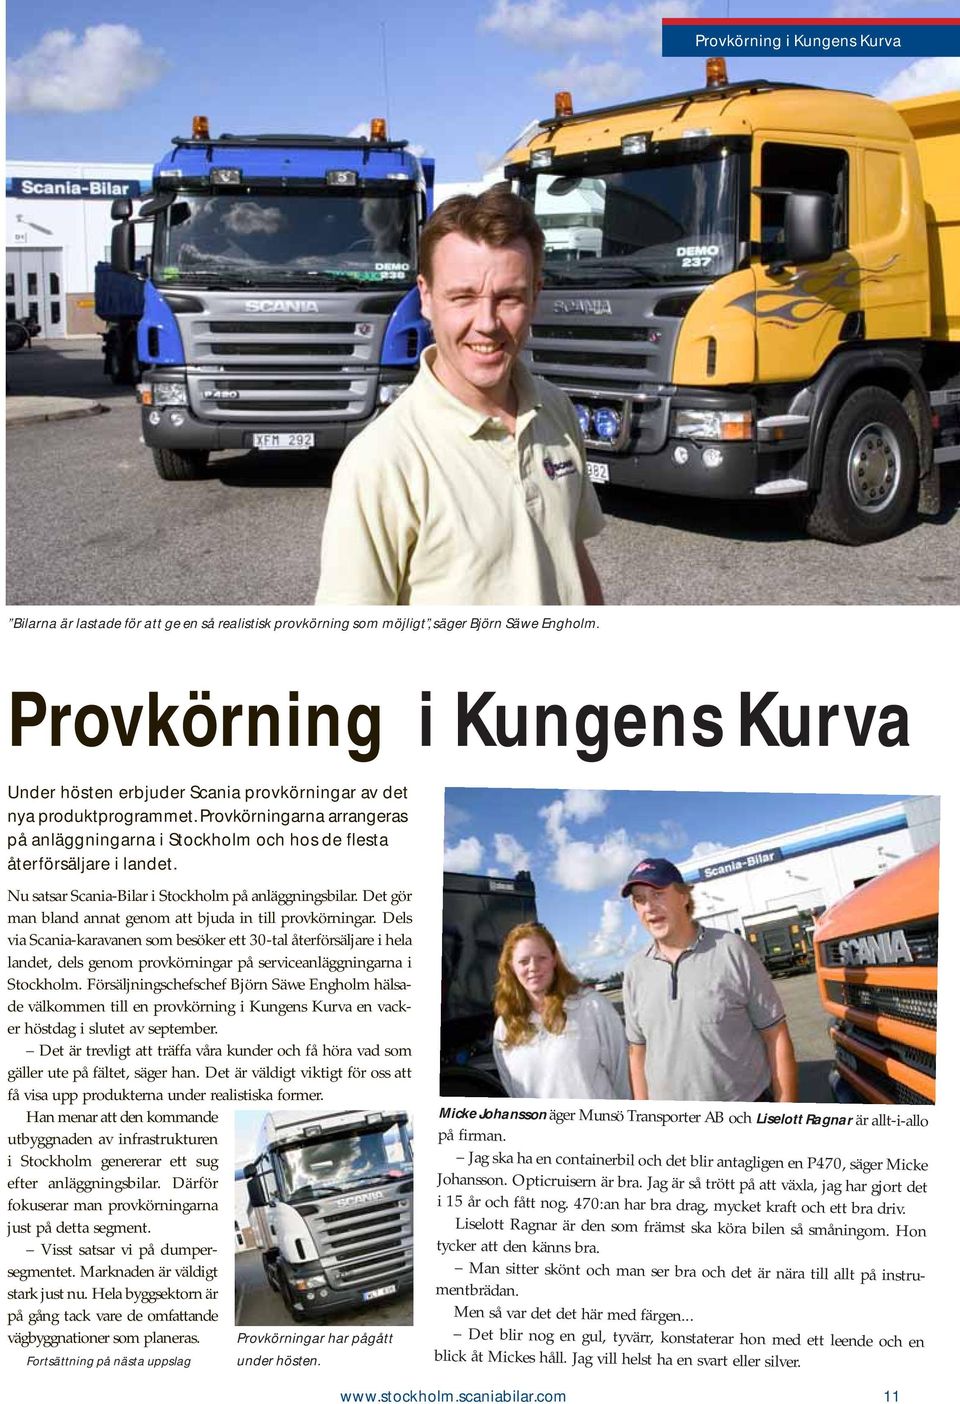 Nu satsar Scania-Bilar i Stockholm på anläggningsbilar. Det gör man bland annat genom att bjuda in till provkörningar.